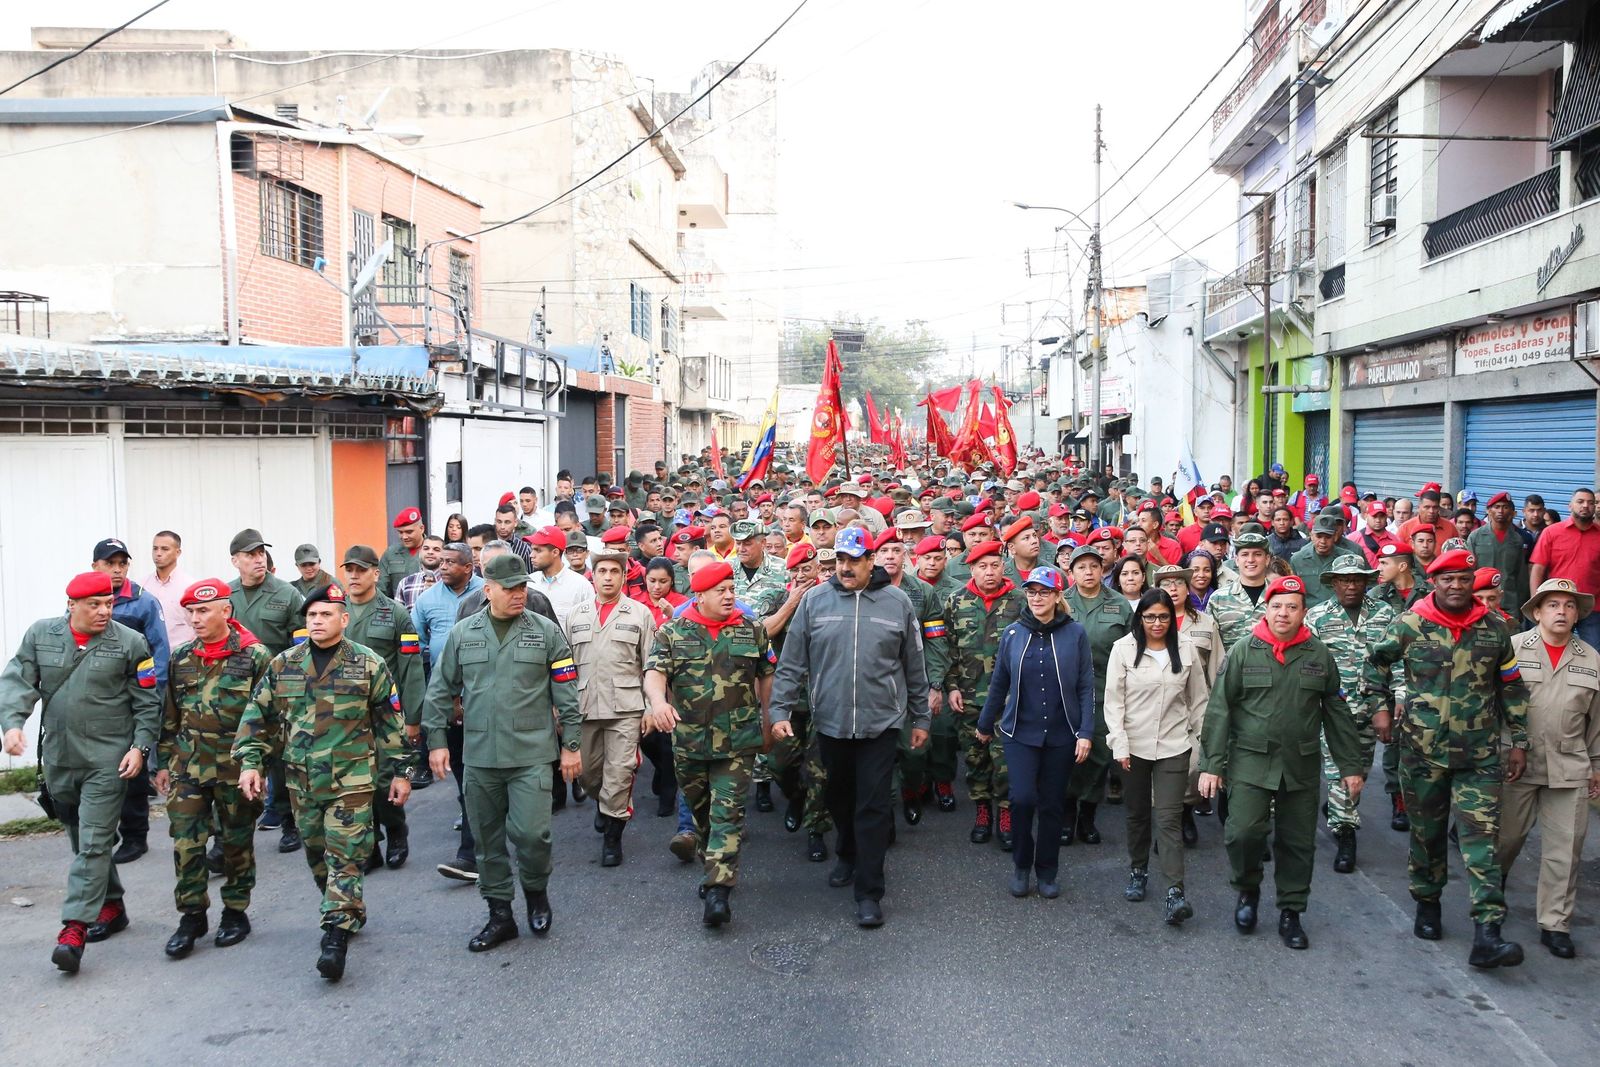 Apoyo. Nicolás Maduro marchó con militares ayer en la ciudad de Maracay, Venezuela. (EFE)